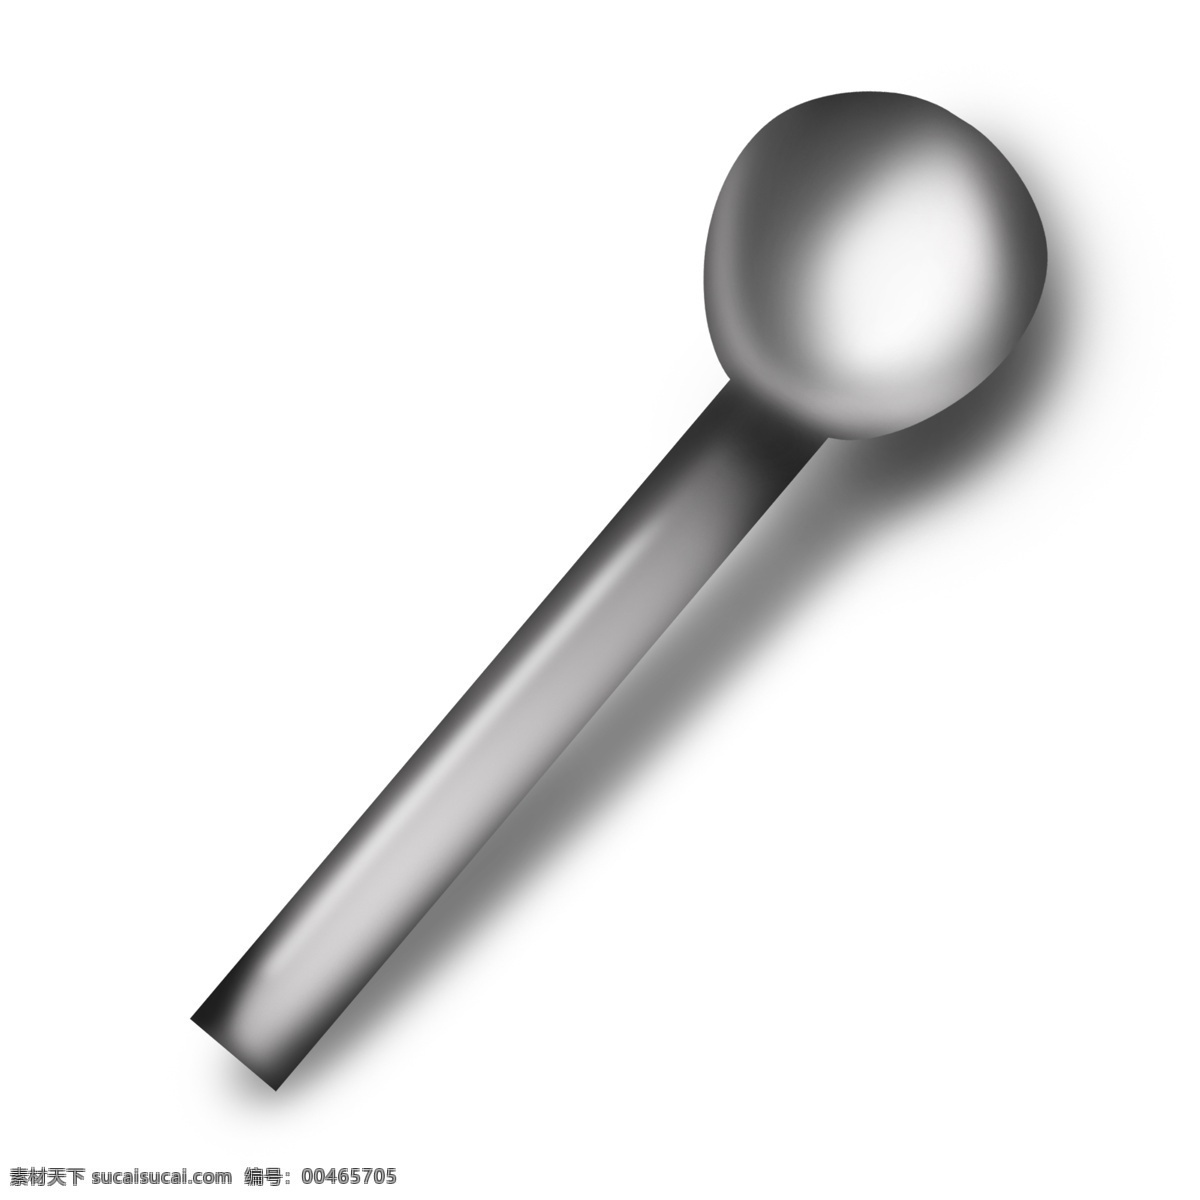 圆形 精致 仿真 反光 勺子 汤勺 量勺 容量 称量 手柄 写实 立体 餐具 用具 工具 灰色 灰白色 容器